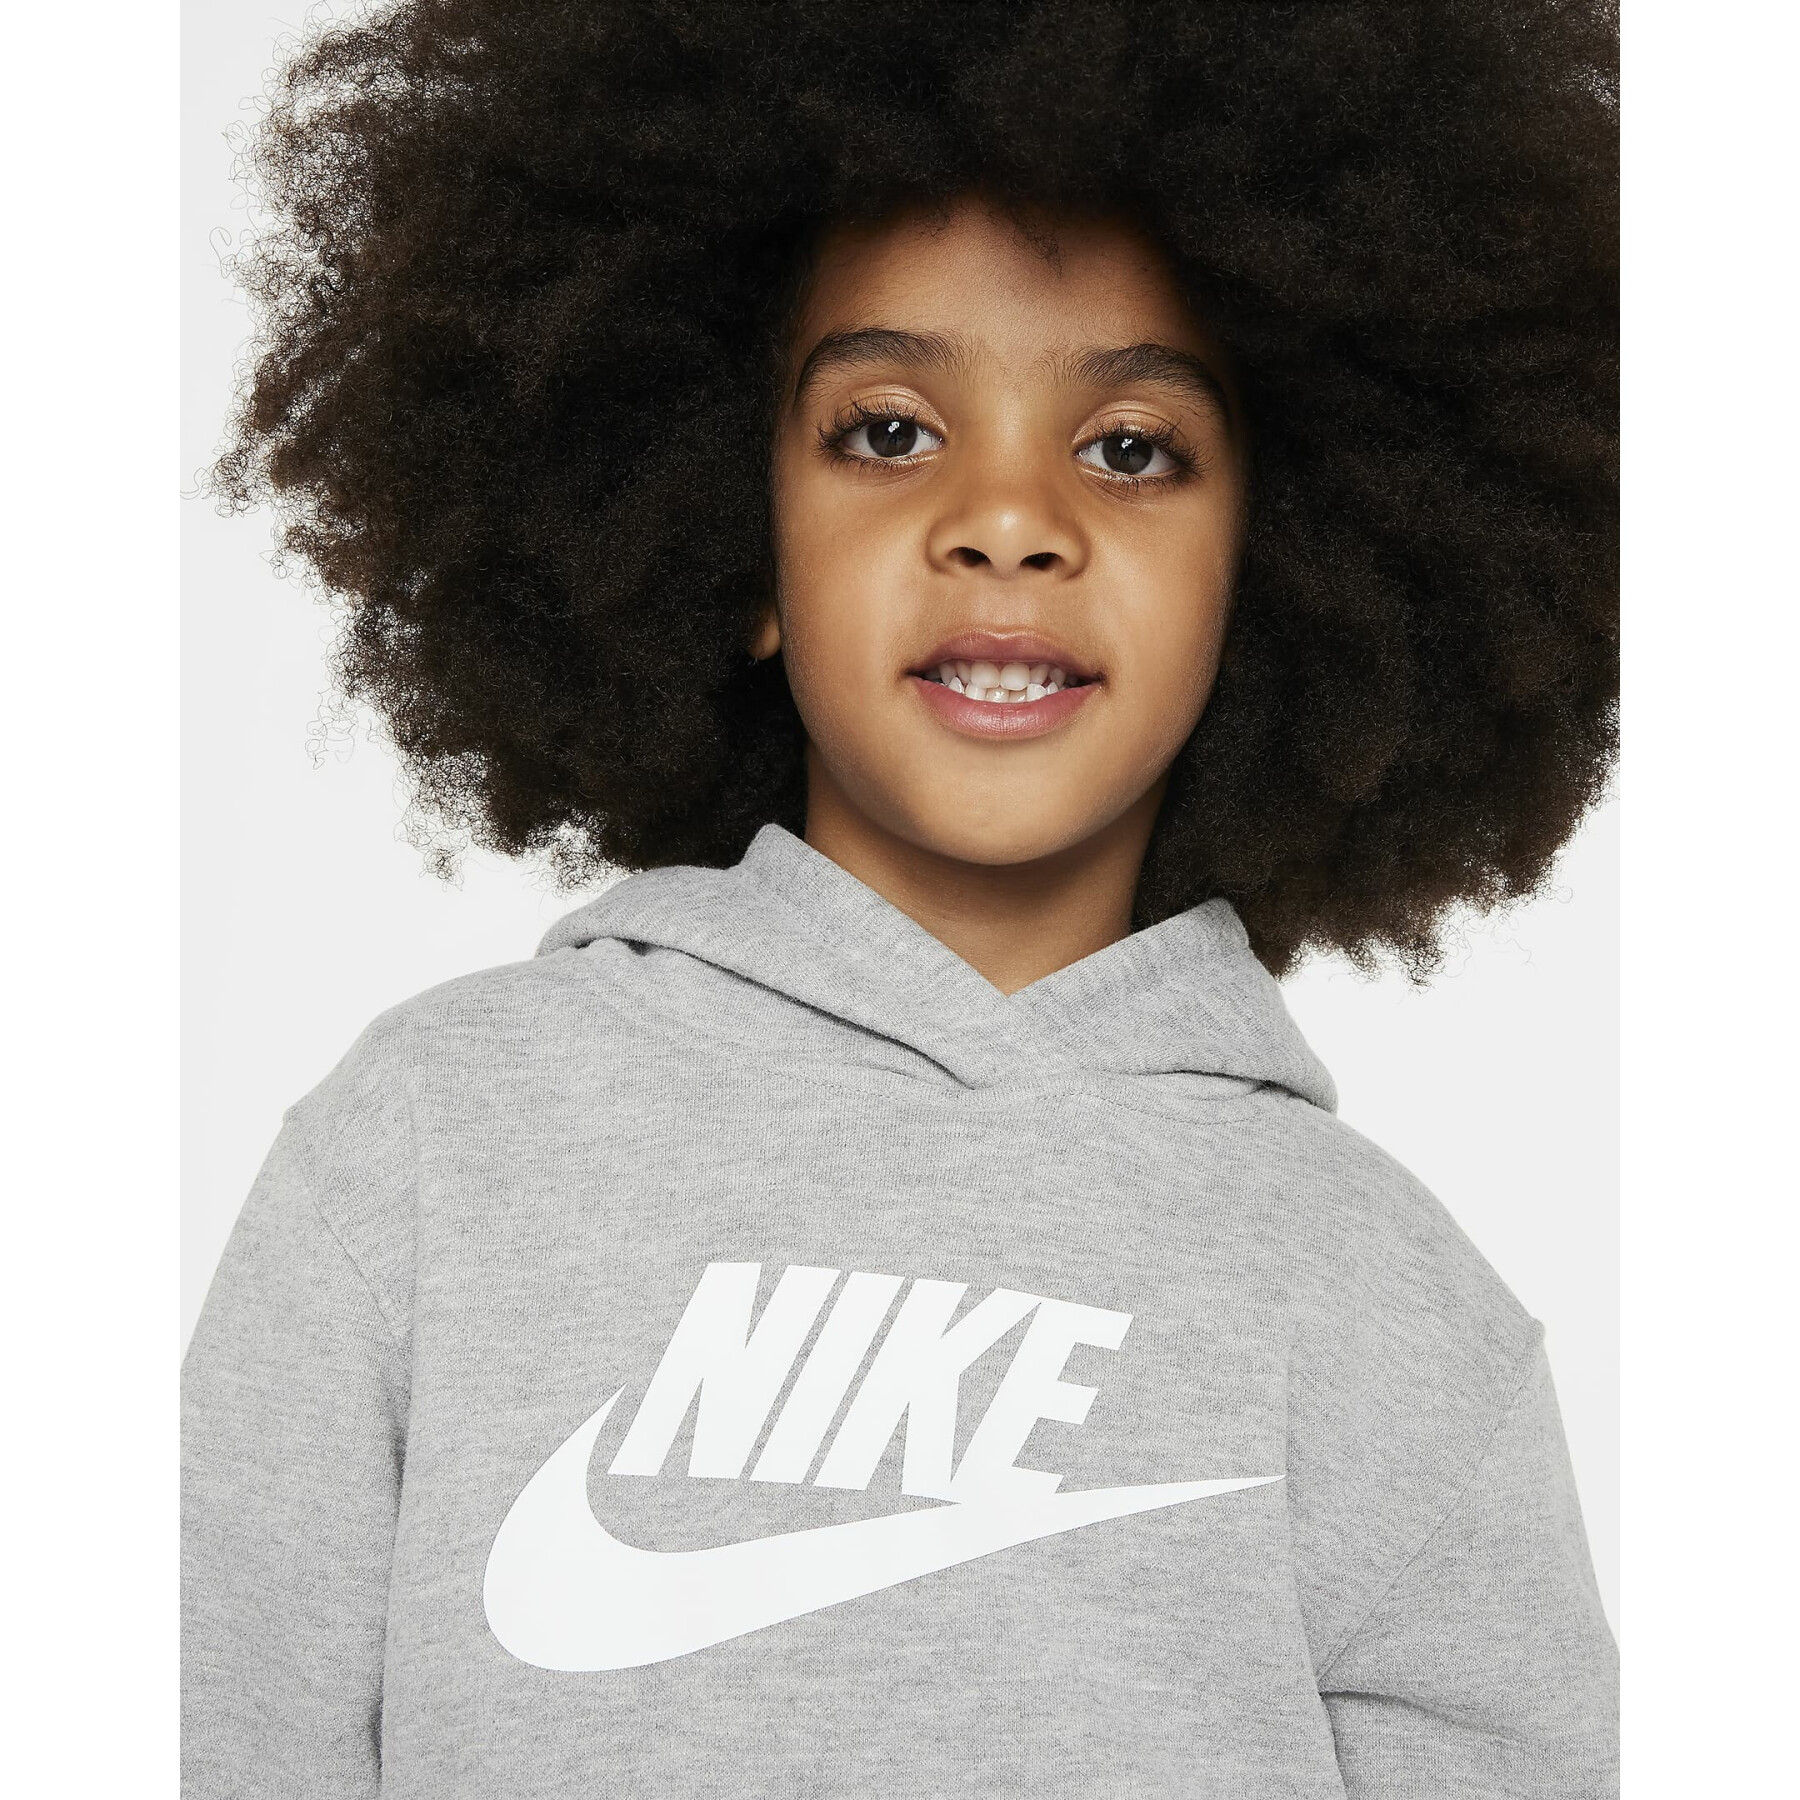 Kinder Trainingsanzug mit Kapuze Nike Club Fleece